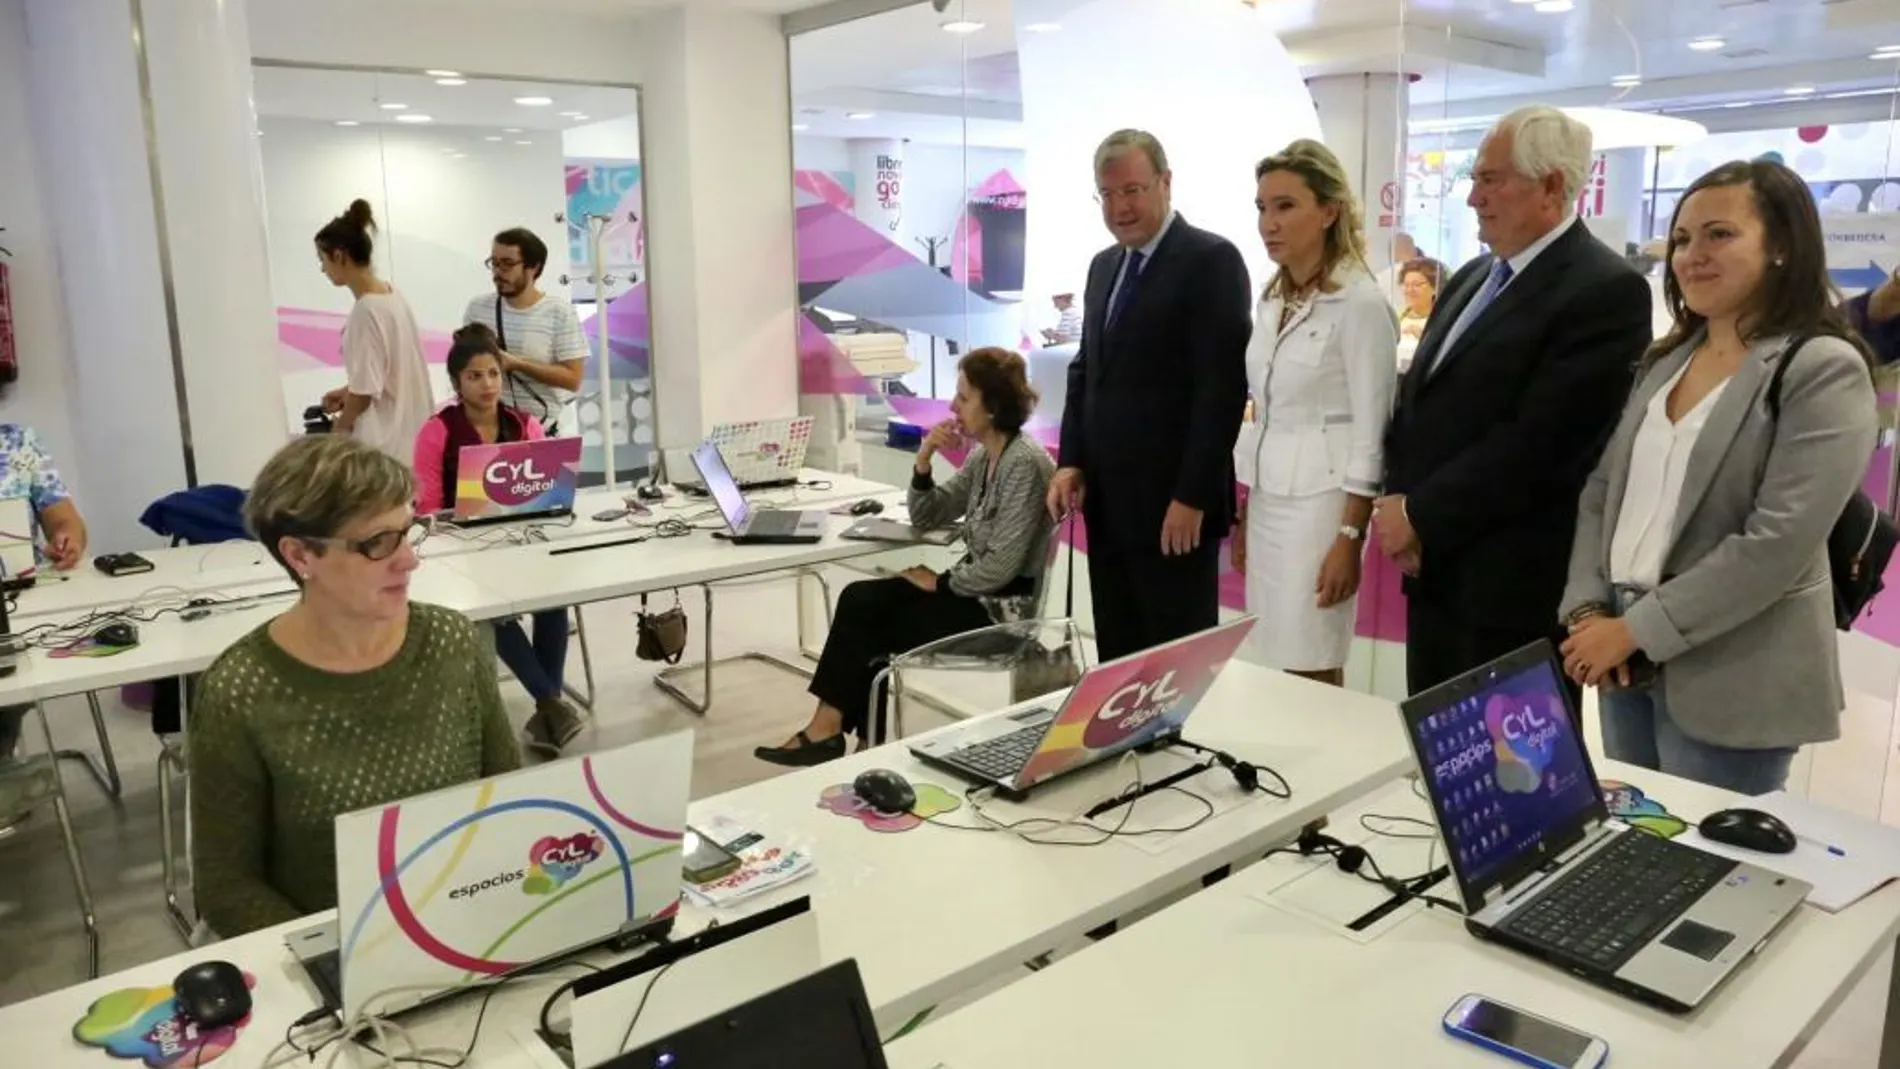 El alcalde Antonio Silván visita junto a María Victoria Seco el taller de alfabetización digital que se desarrolla en el Espacio CyL digital de la capital leonesa